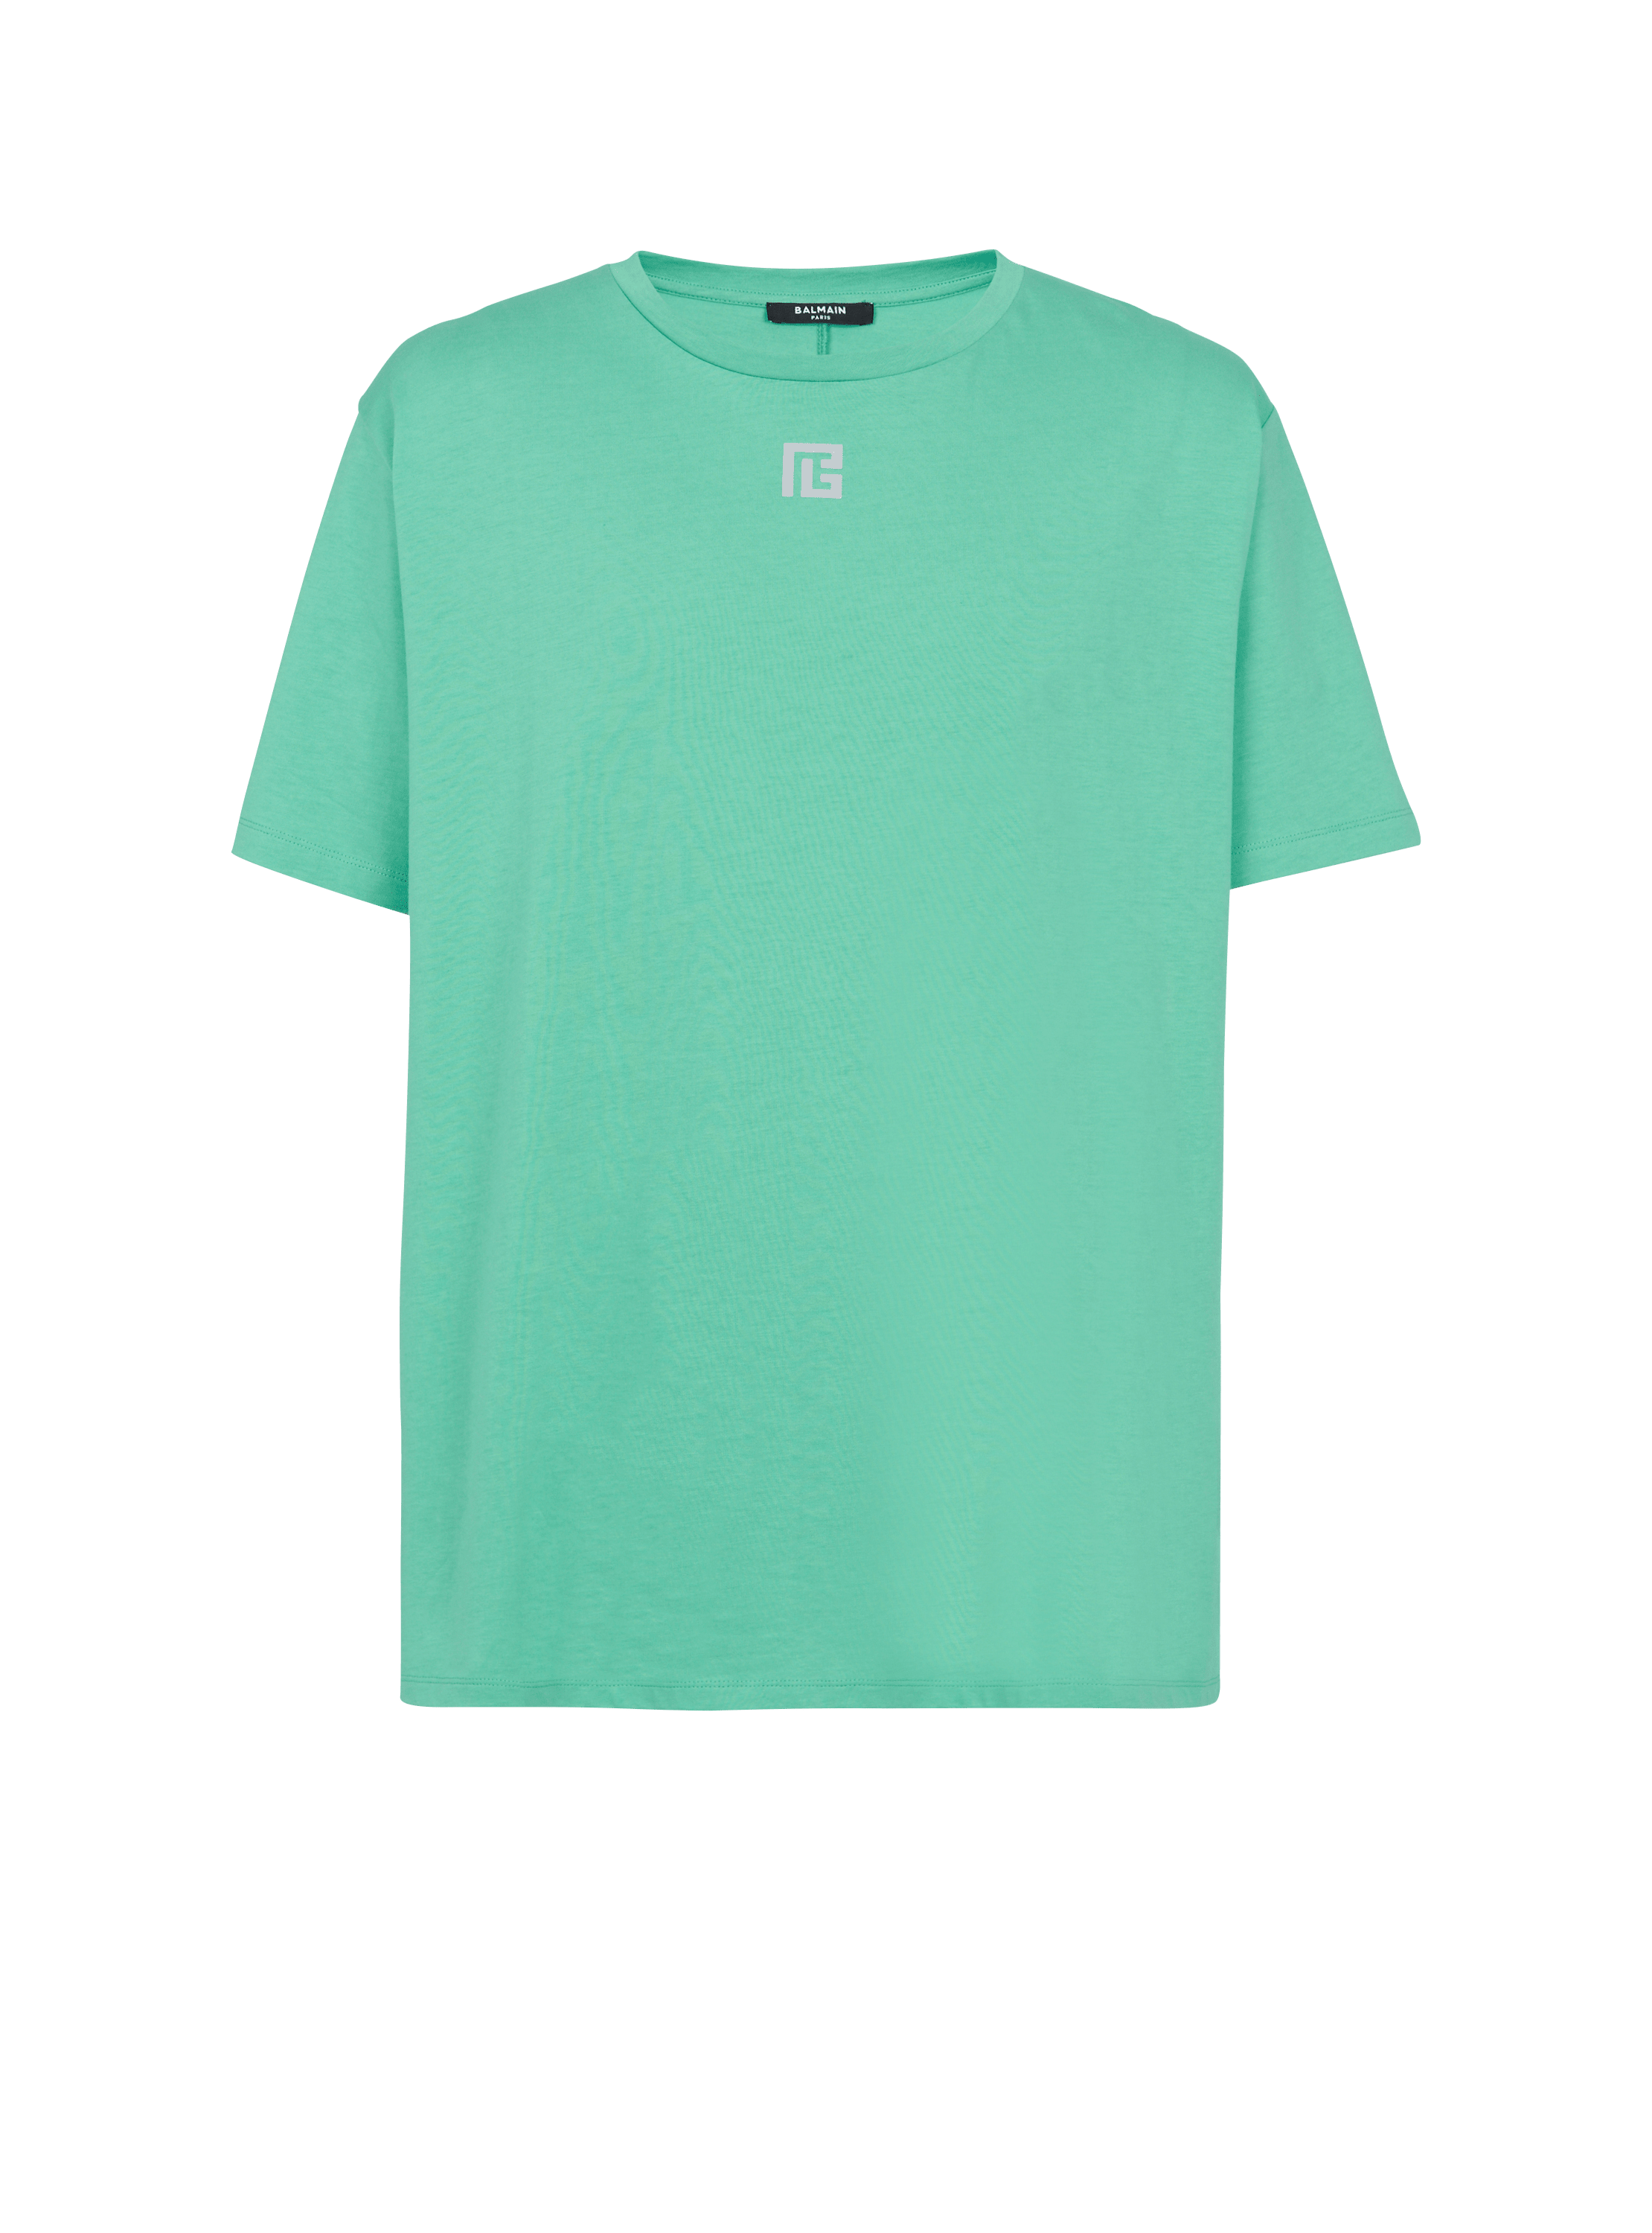 T-shirt oversize in cotone ecosostenibile con maxi logo Balmain riflettente stampato